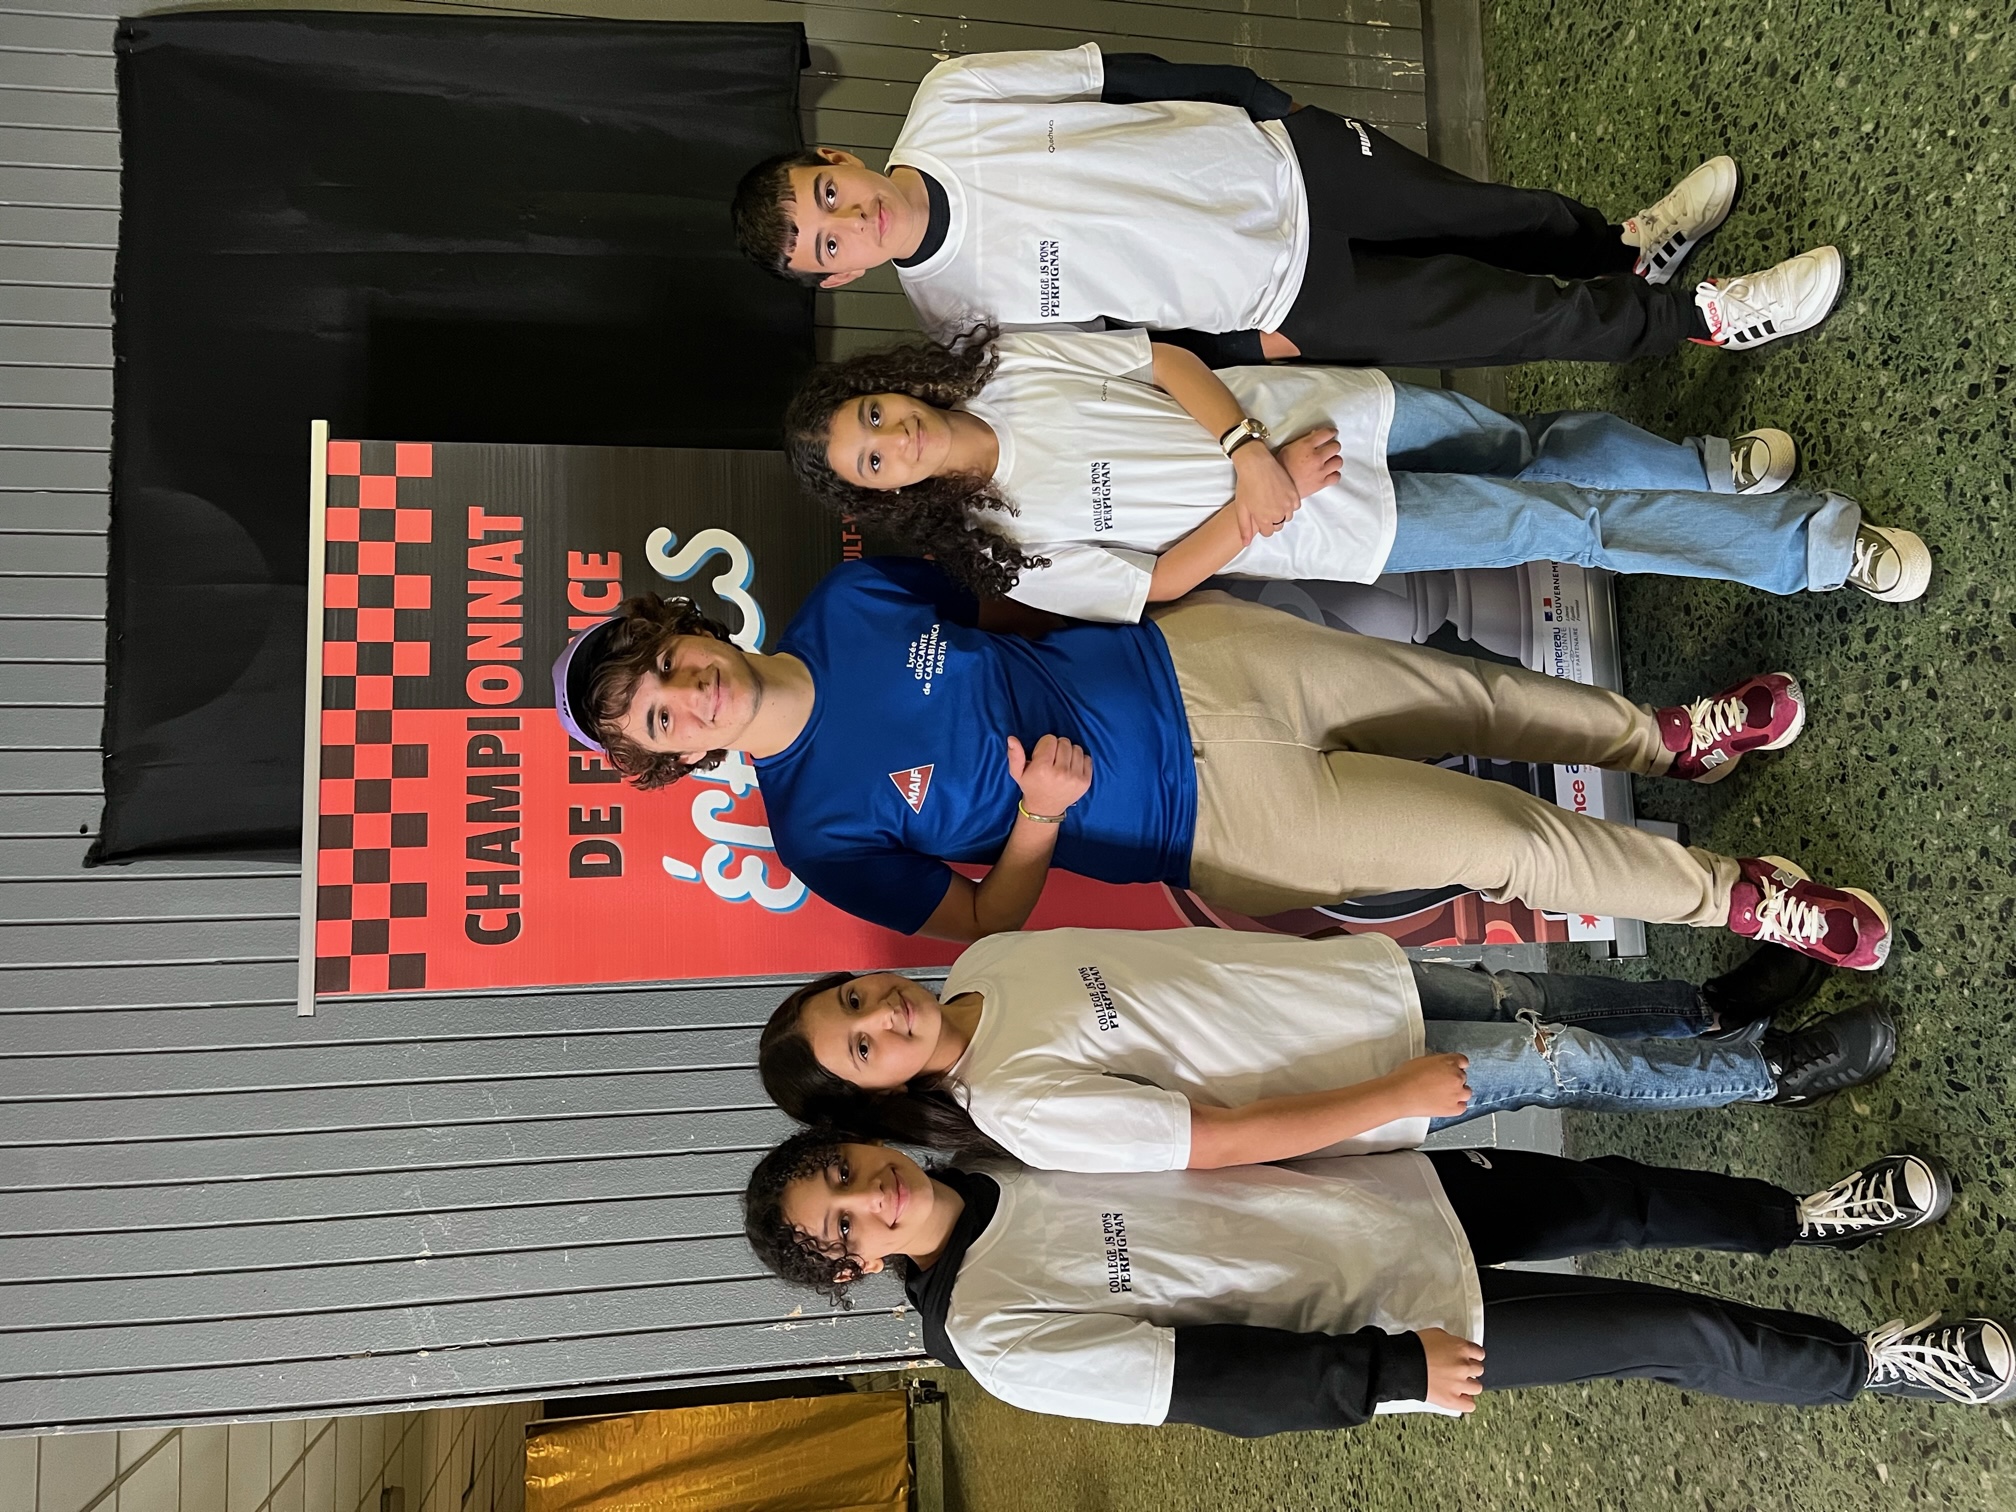 L'équipe qui pose avec le jeune Prodige Marc Andria Maurizzi, champion d'Europe Minimes et plus jeune Français de l'histoire à devenir grand maître international à 14 ans